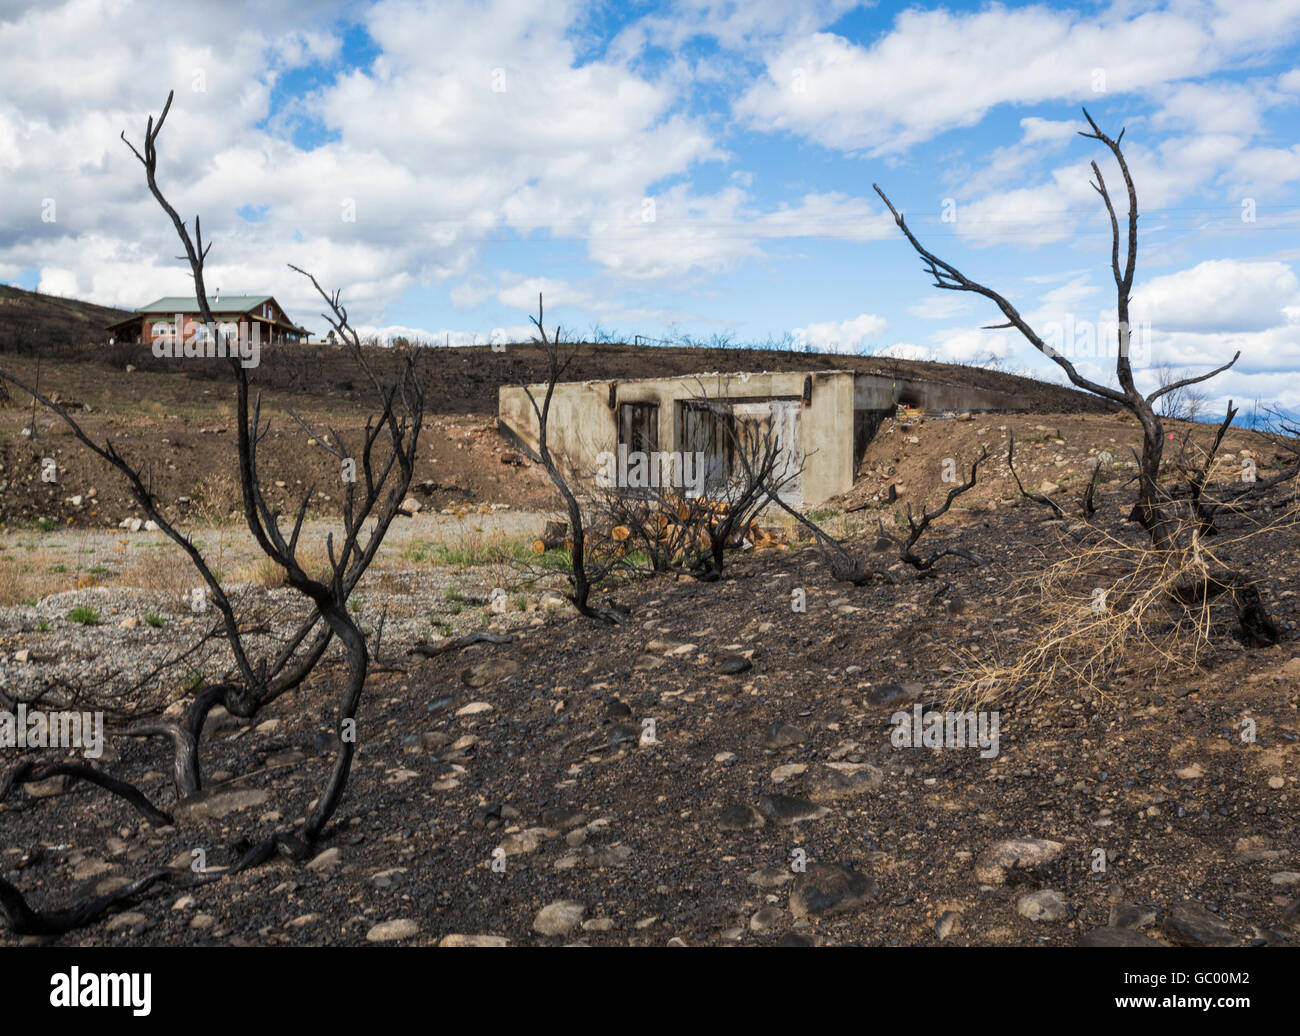 Restes d'une maison brûlée accueil en paysage rural carbonisé après un incendie. La destruction causées par une catastrophe naturelle de forêt. Banque D'Images